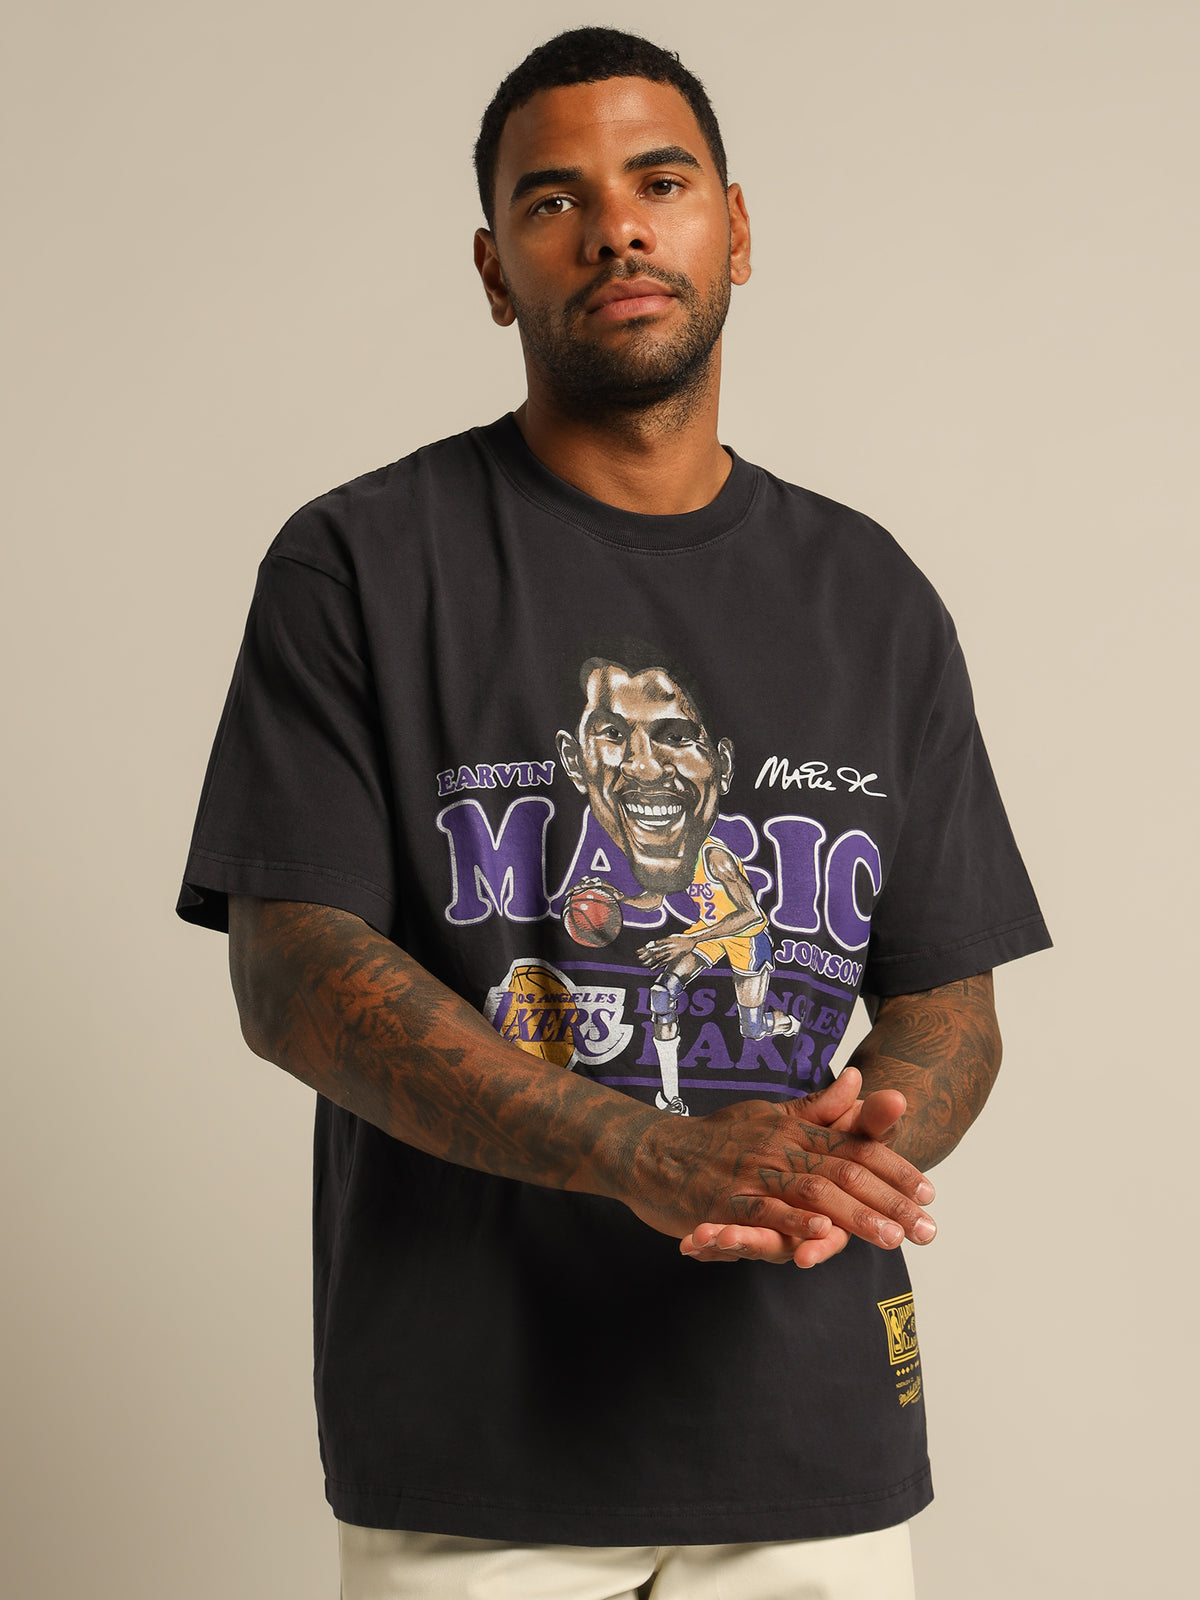 LA Lakers Magic Johnson T-Shirt in Black